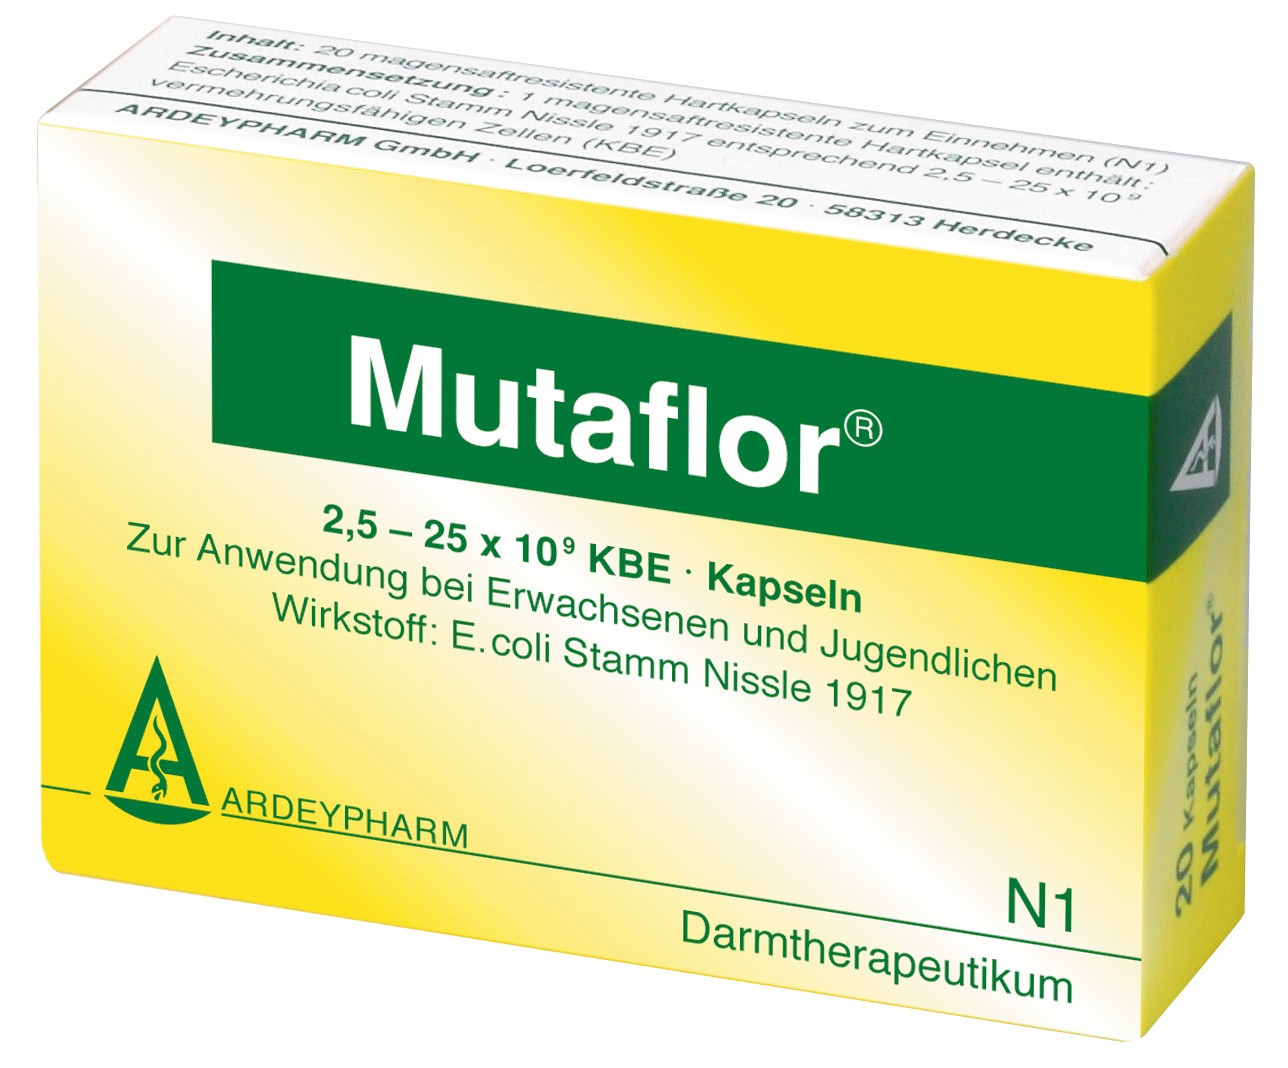 Mutaflor product description Video